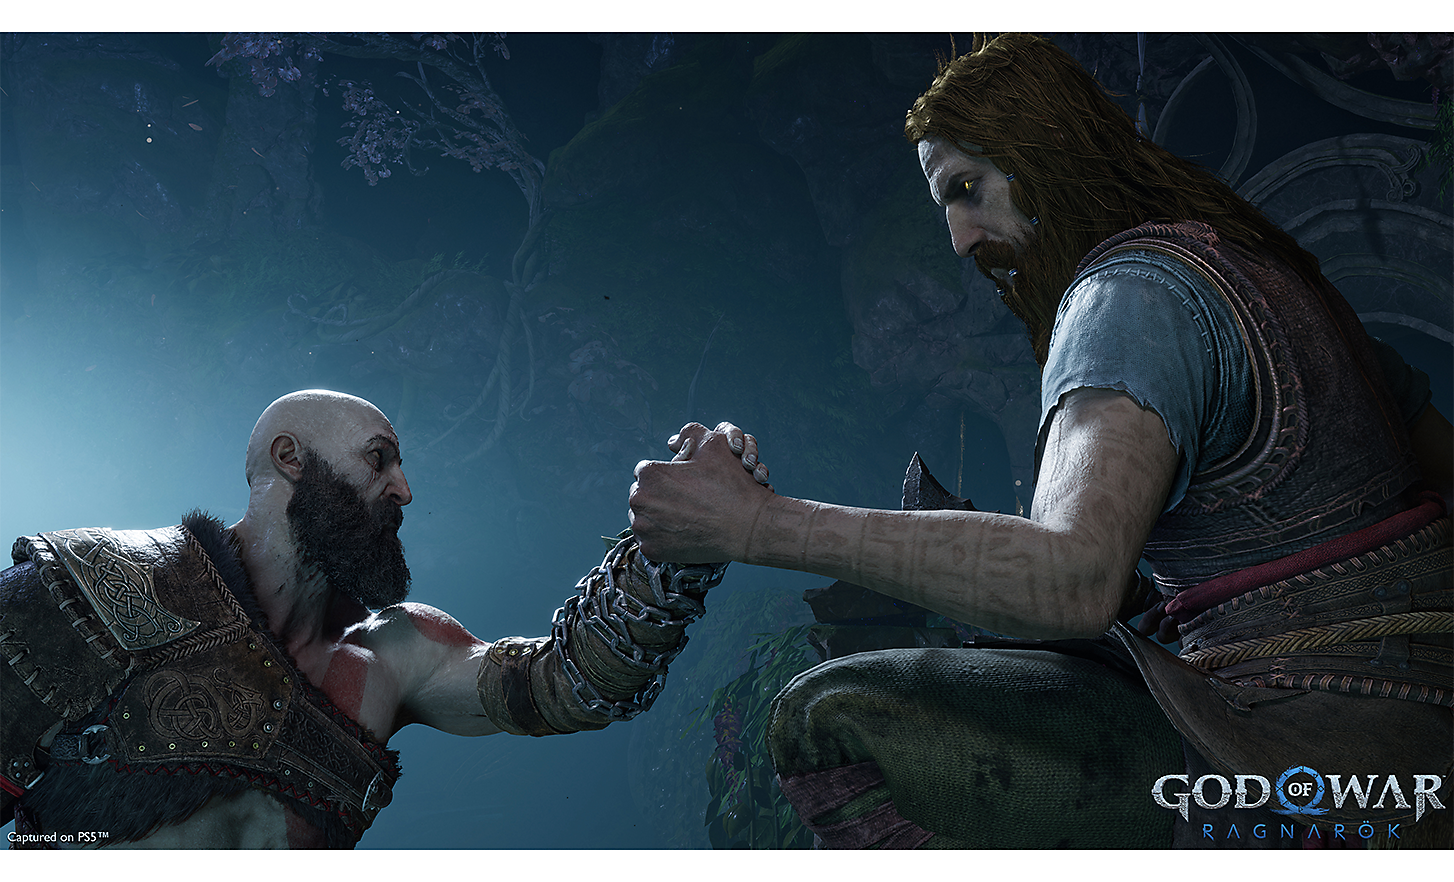 Adegan dari God of War: Ragnarok memperlihatkan jabat tangan antara dua jagoan